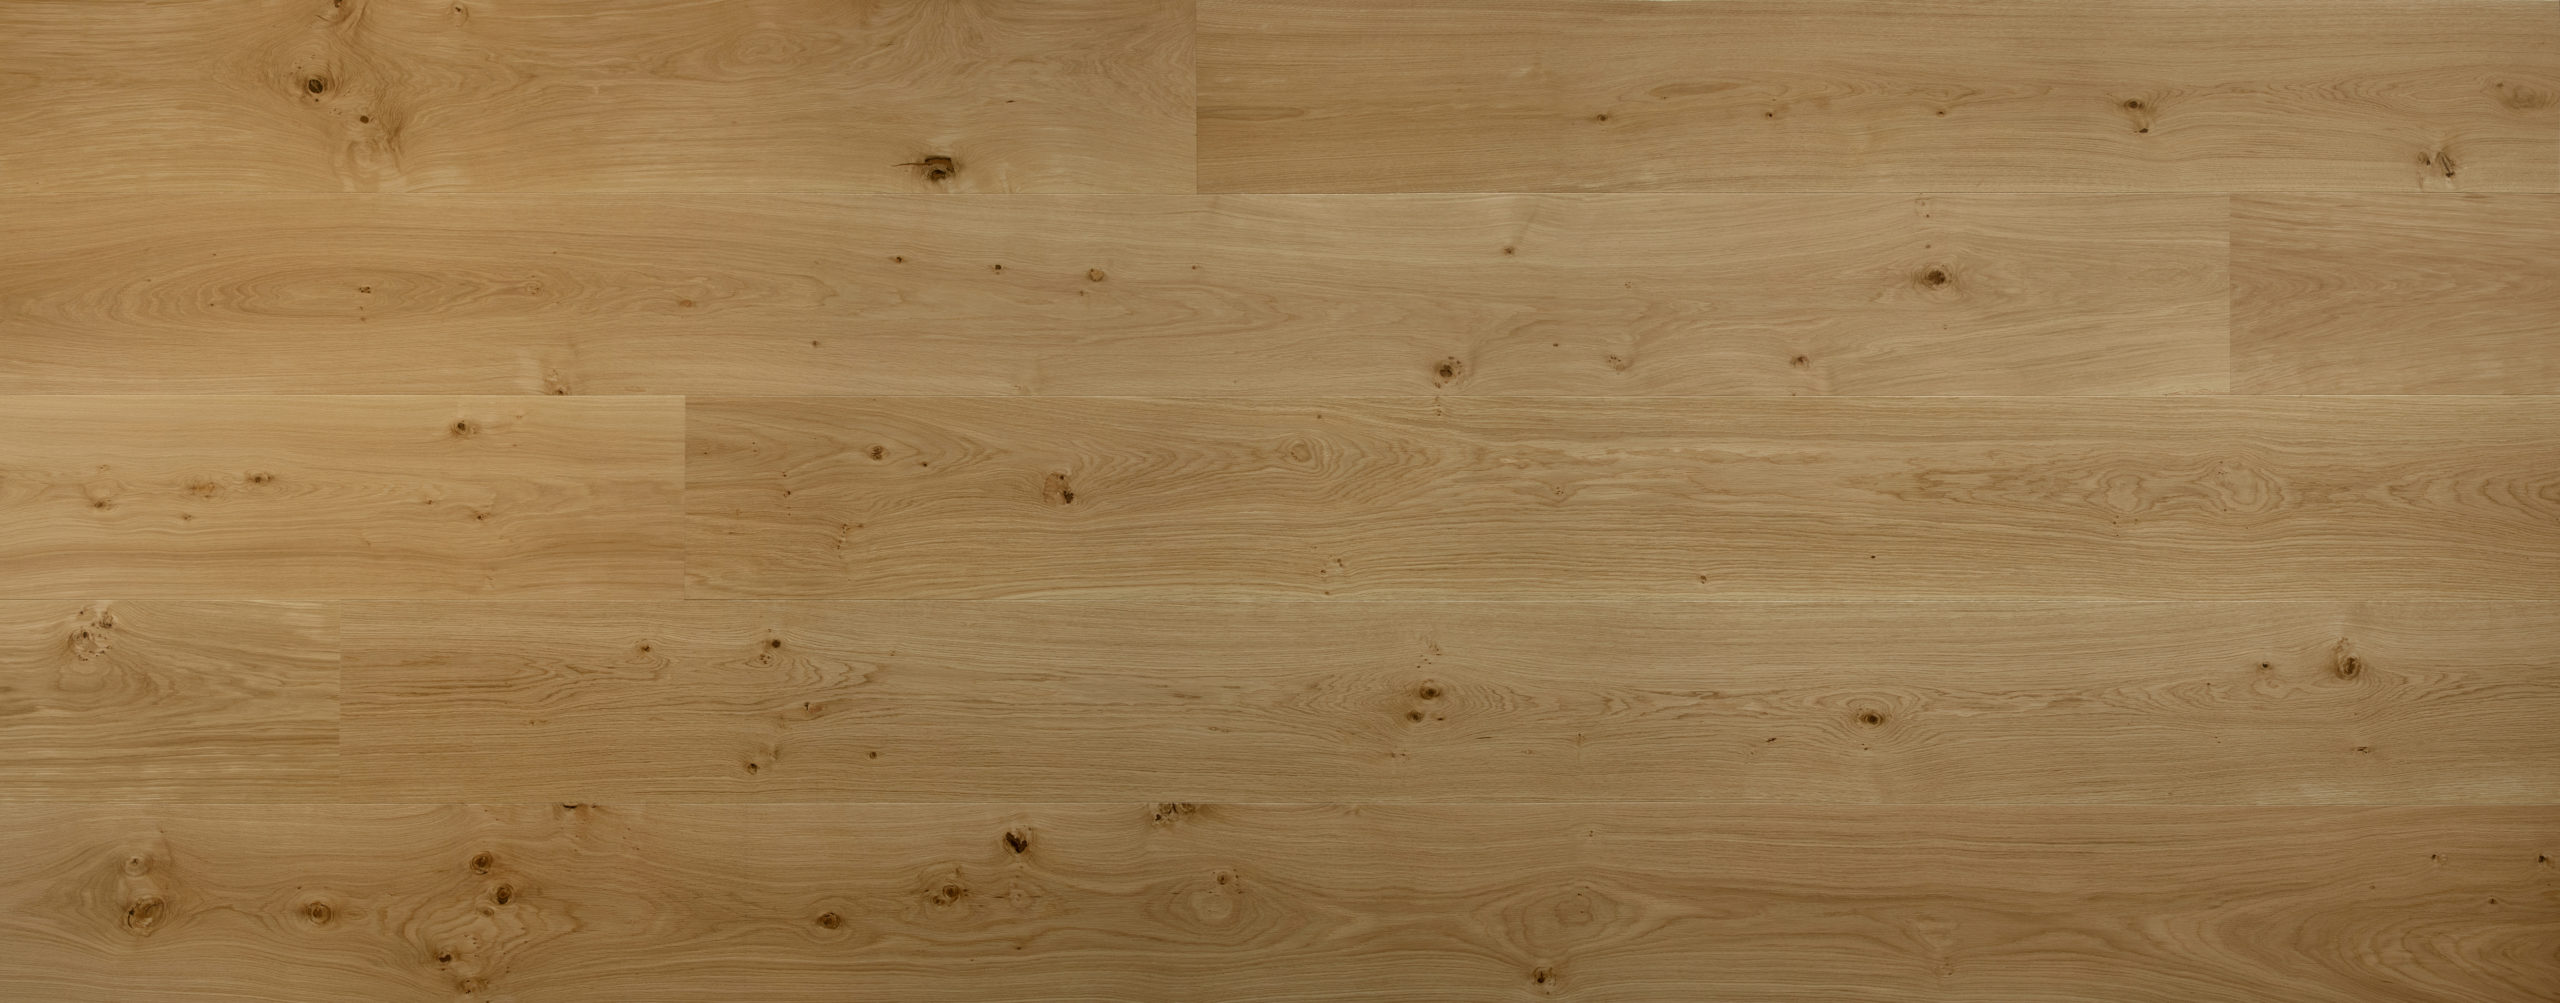 French White Oak Flooring Vision Wood, Light Oak Hardwood Flooring